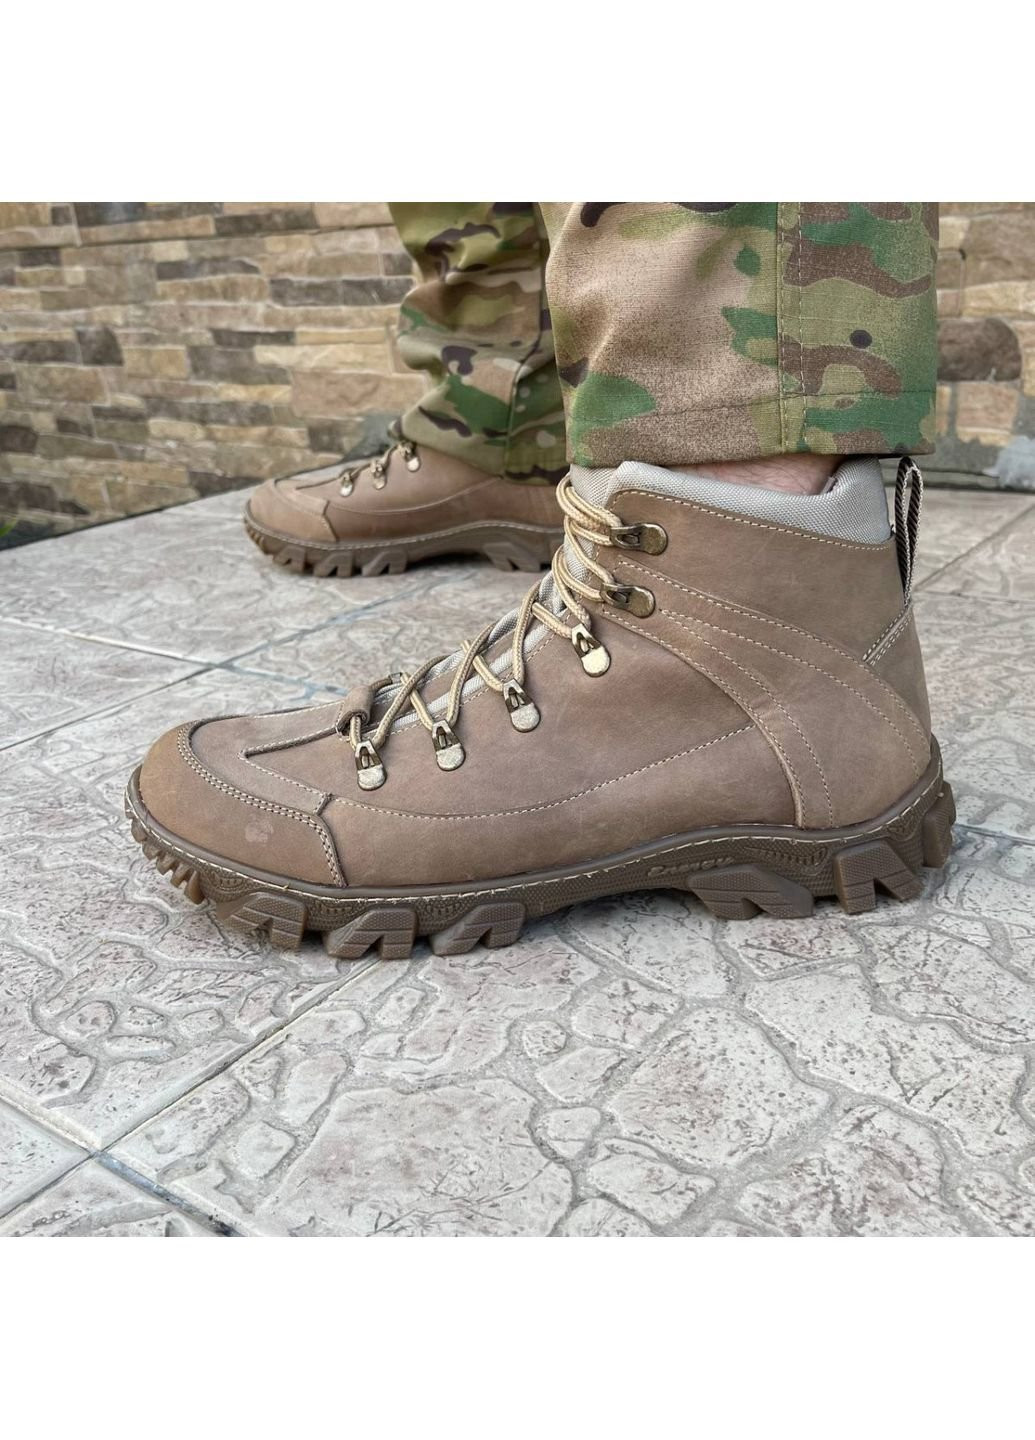 Коричневые осенние ботинки военные тактические всу (зсу) 7522 43 р 28,5 см коричневые KNF